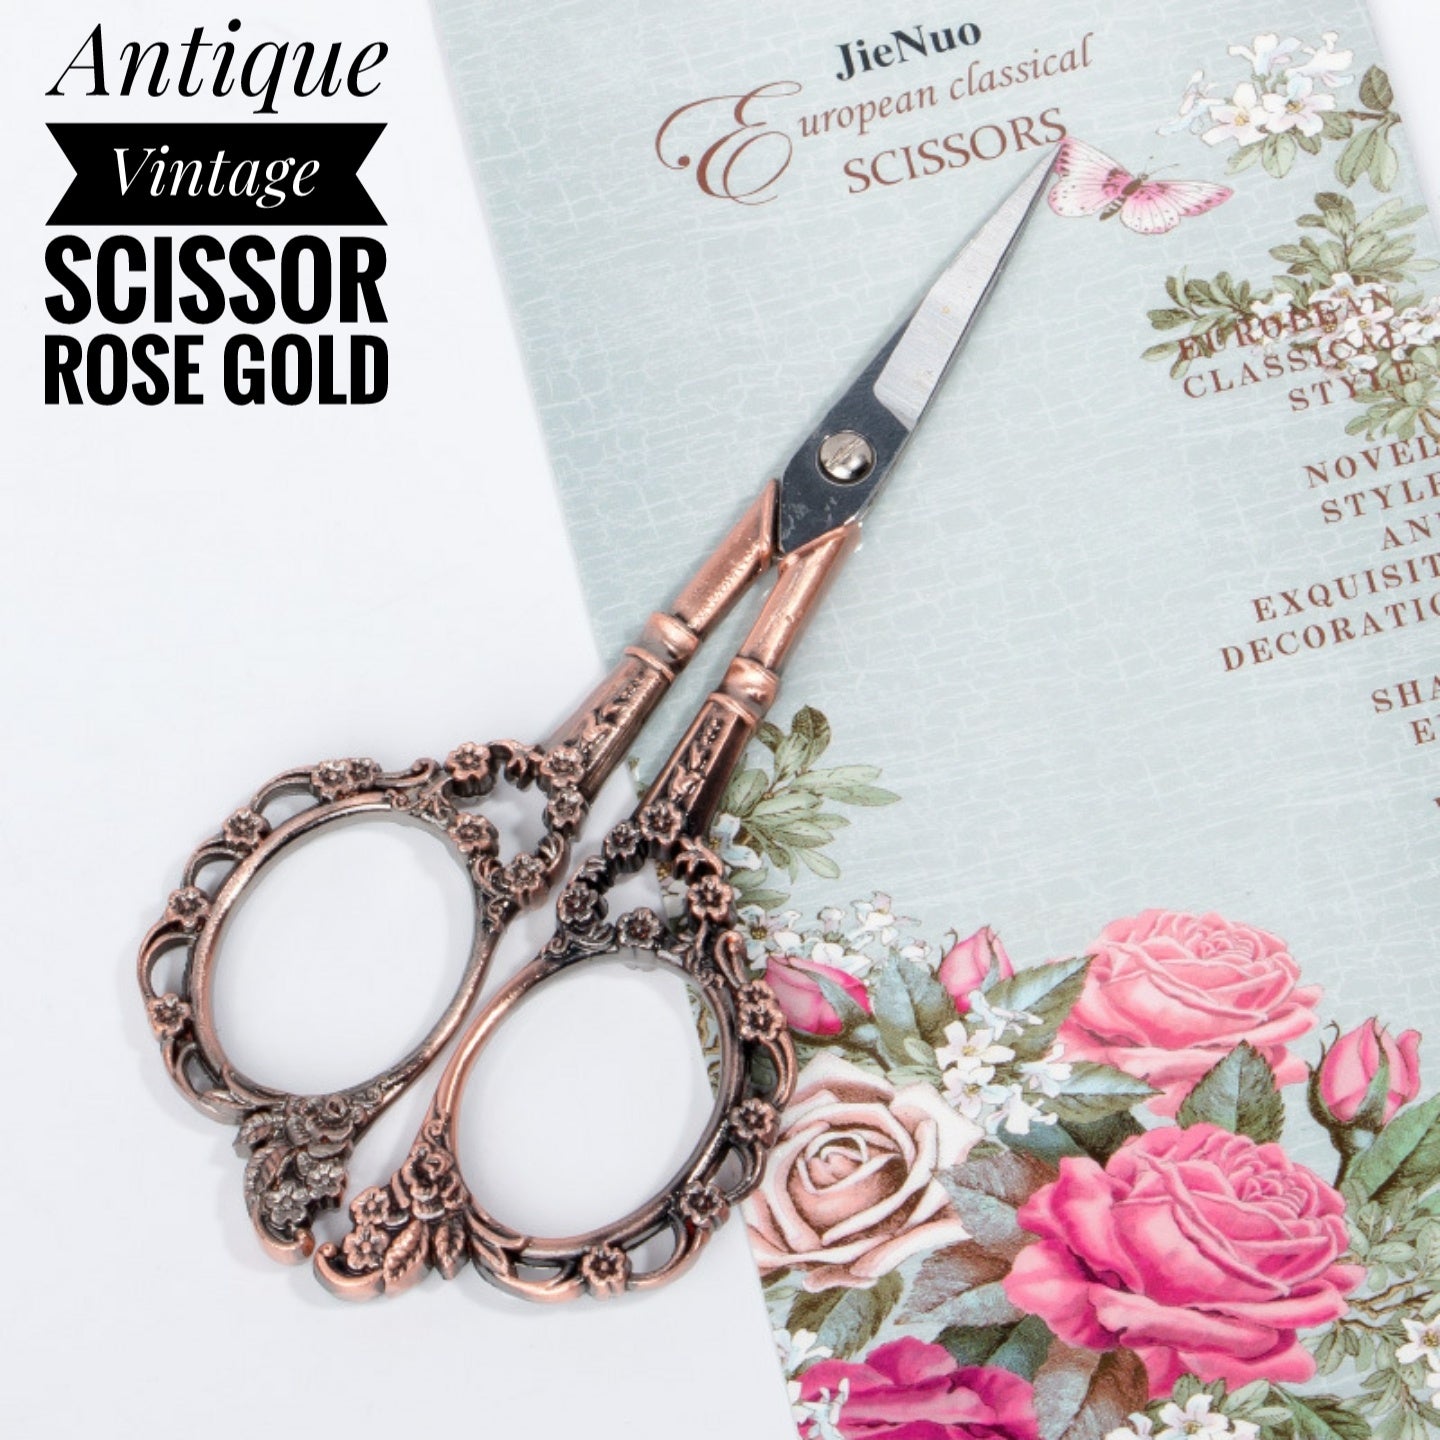 Antique Vintage Scissor 